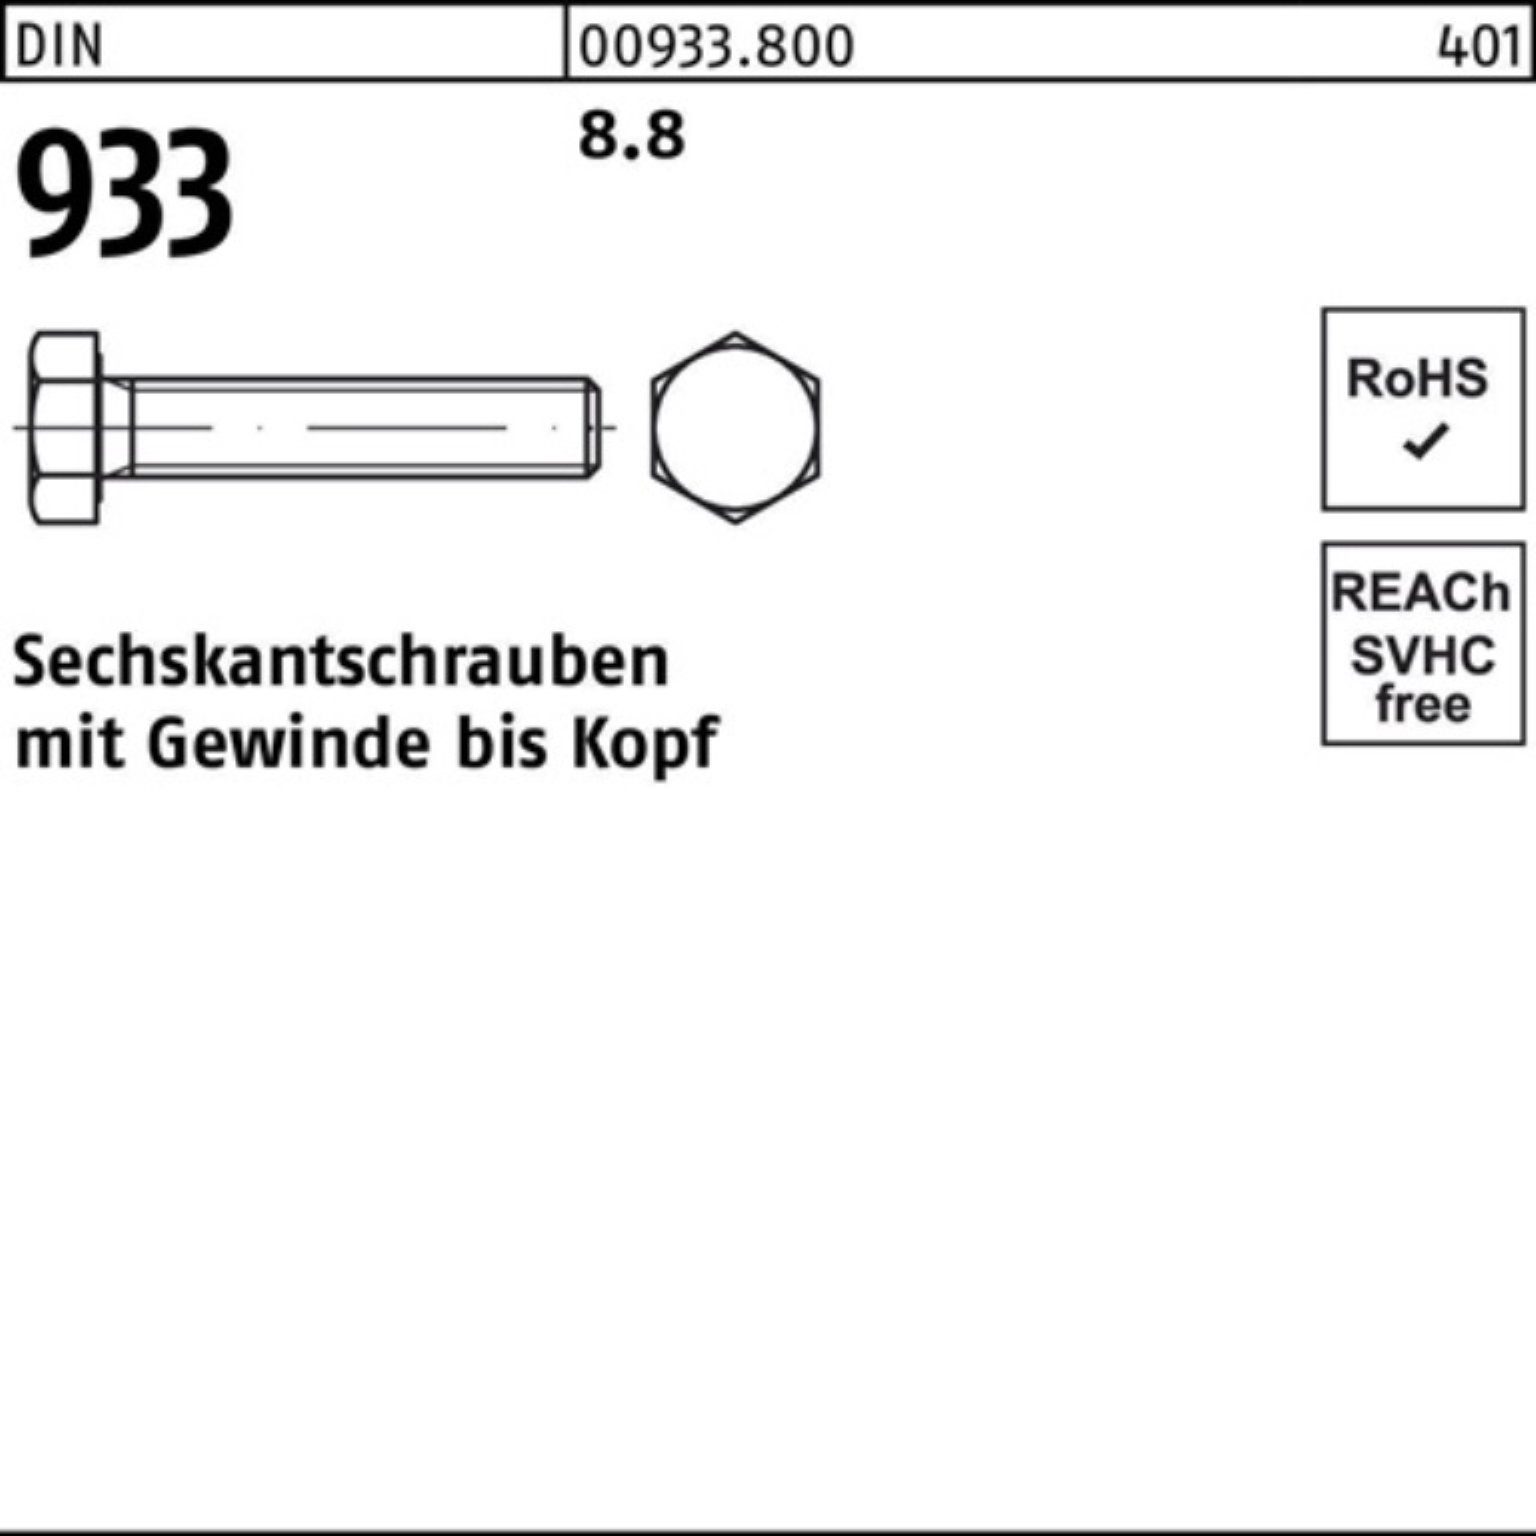 Reyher Sechskantschraube 500er Pack Sechskantschraube DIN 933 VG M3x 5 8.8 500 Stück DIN 933 8